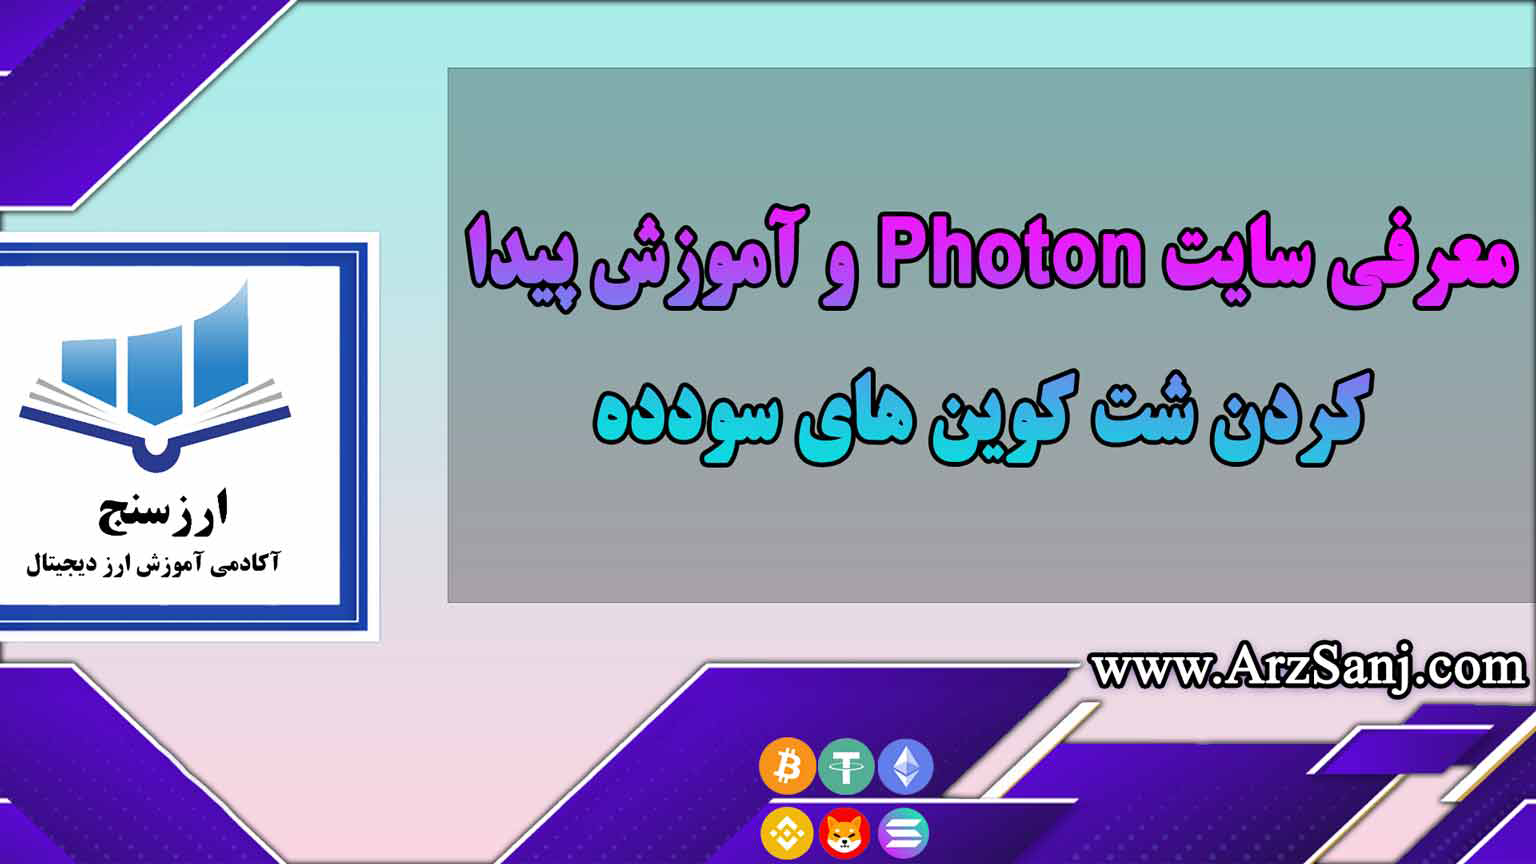 معرفی سایت Photon و آموزش پیدا کردن شت کوین های سودده